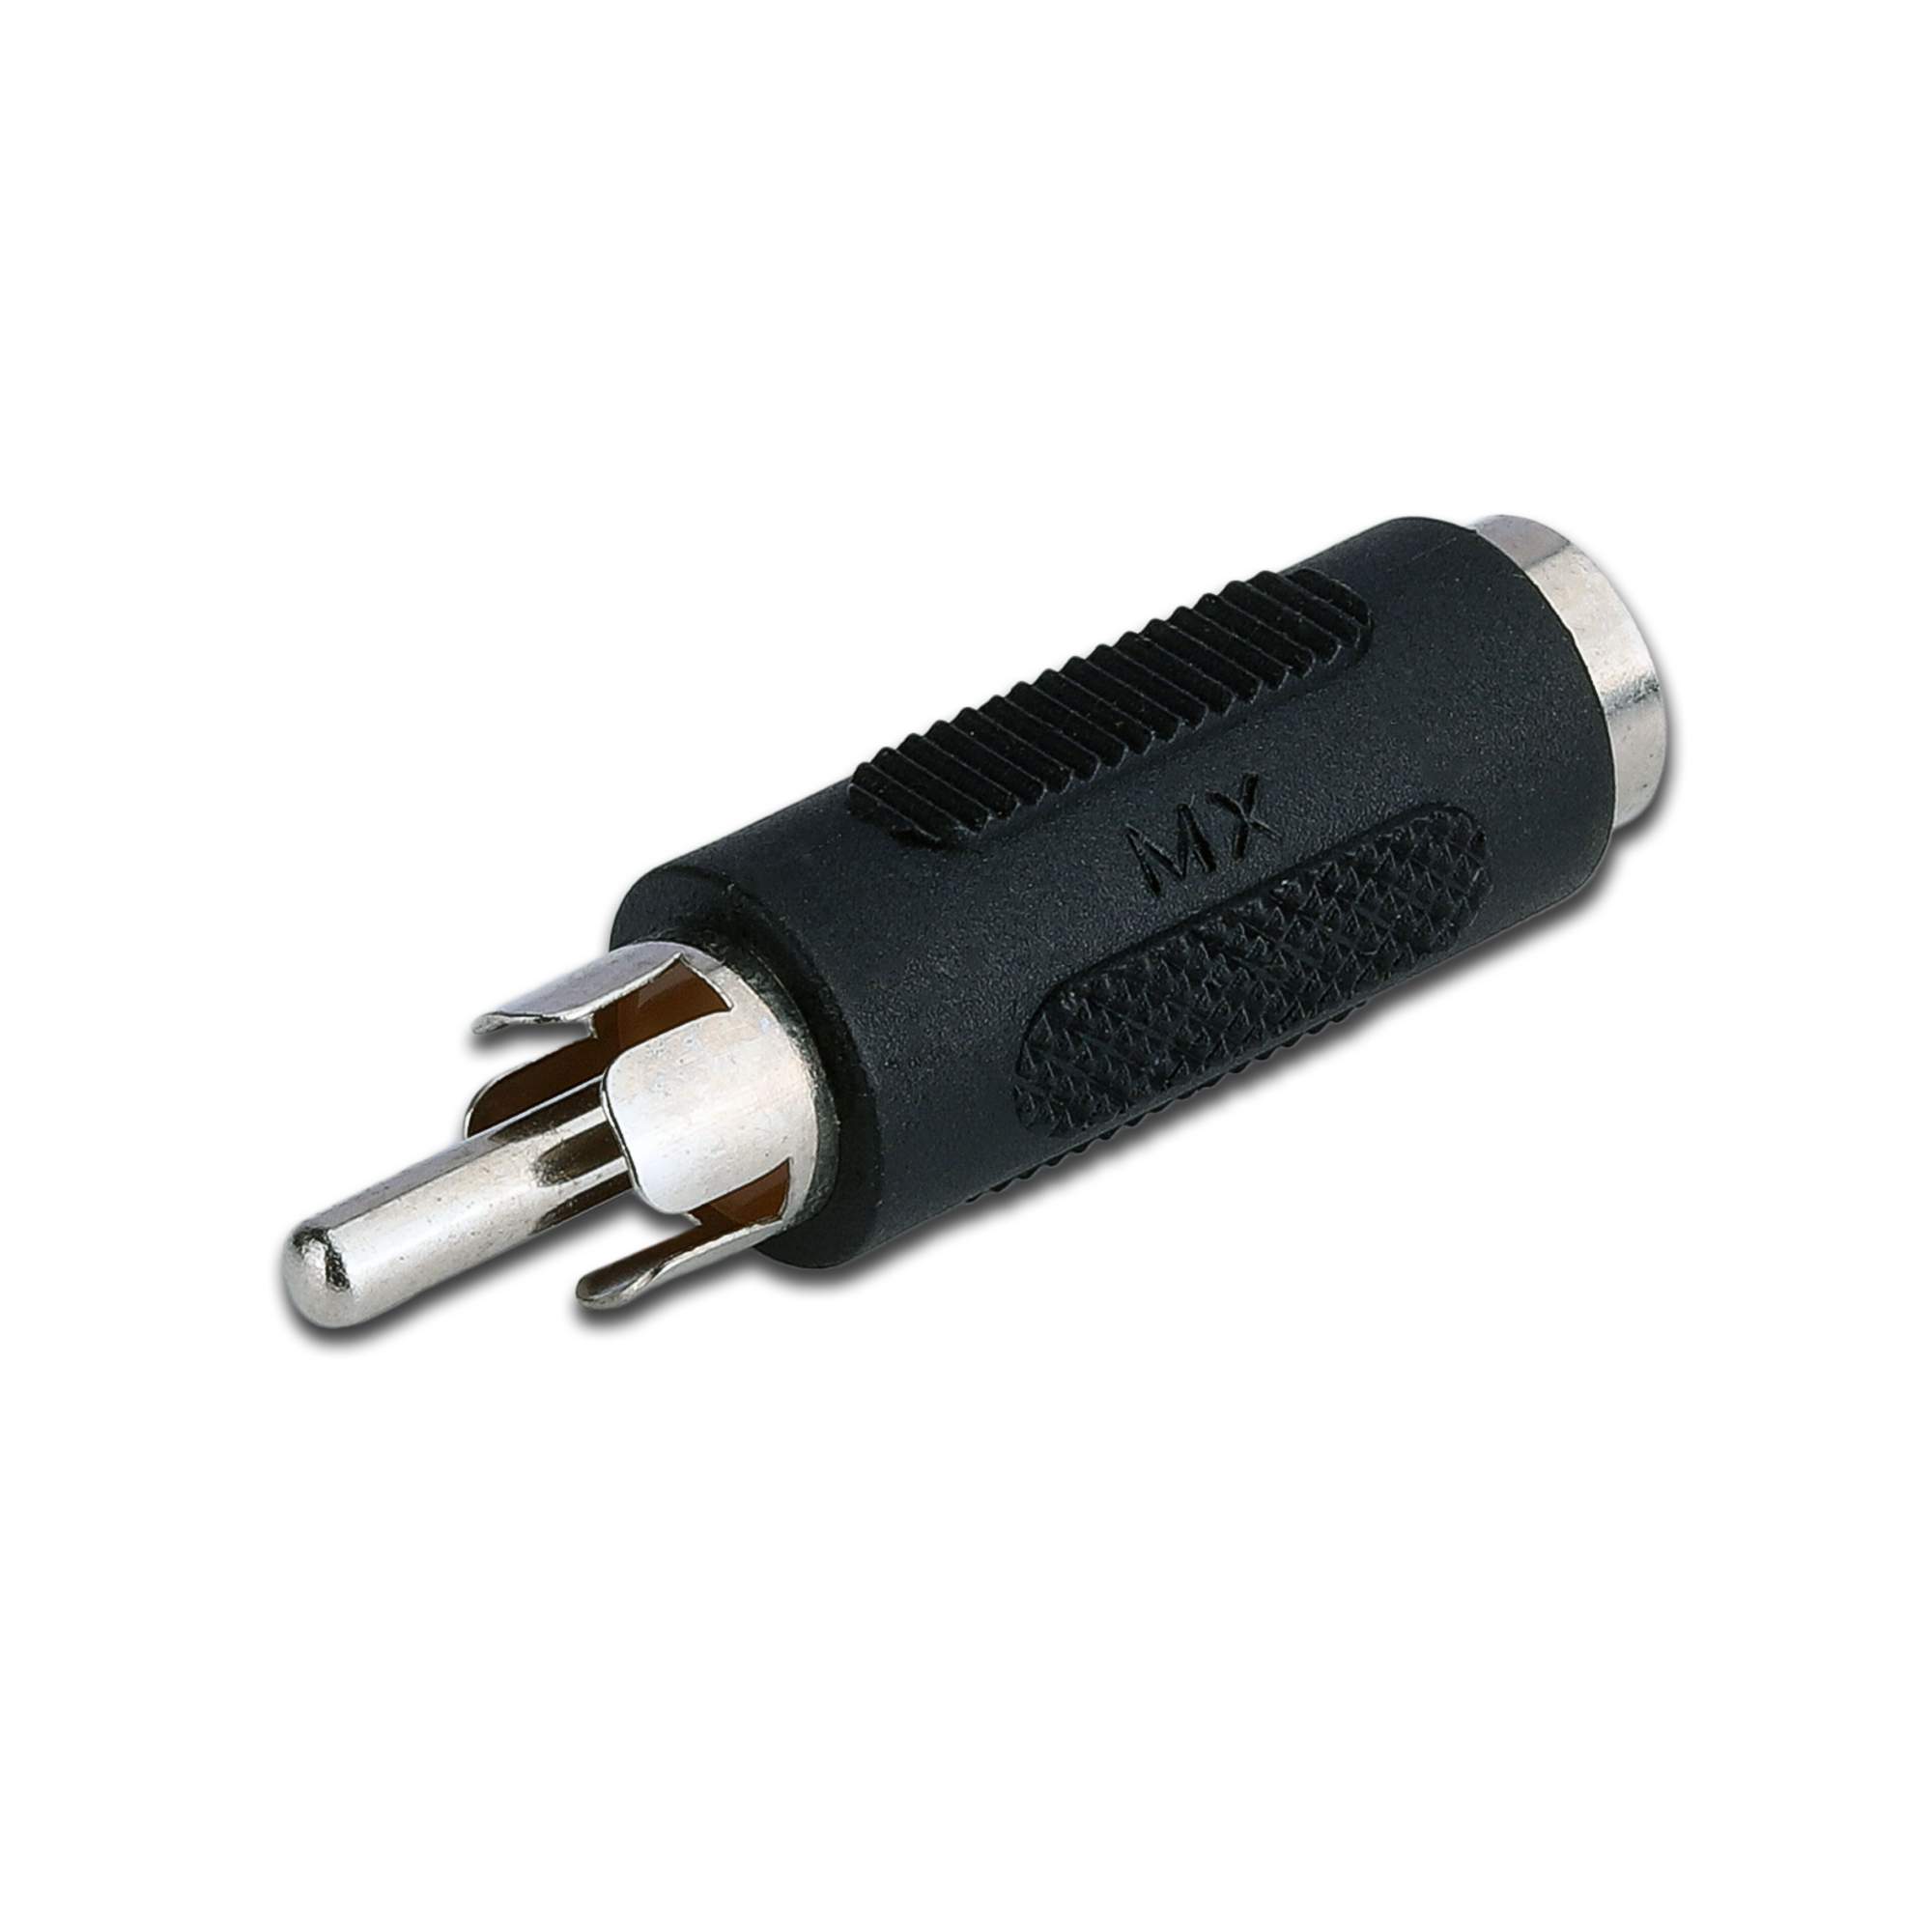 2.5mm Mâle à 3.5mm femelle stéréo mic audio convertisseur adaptateur jack